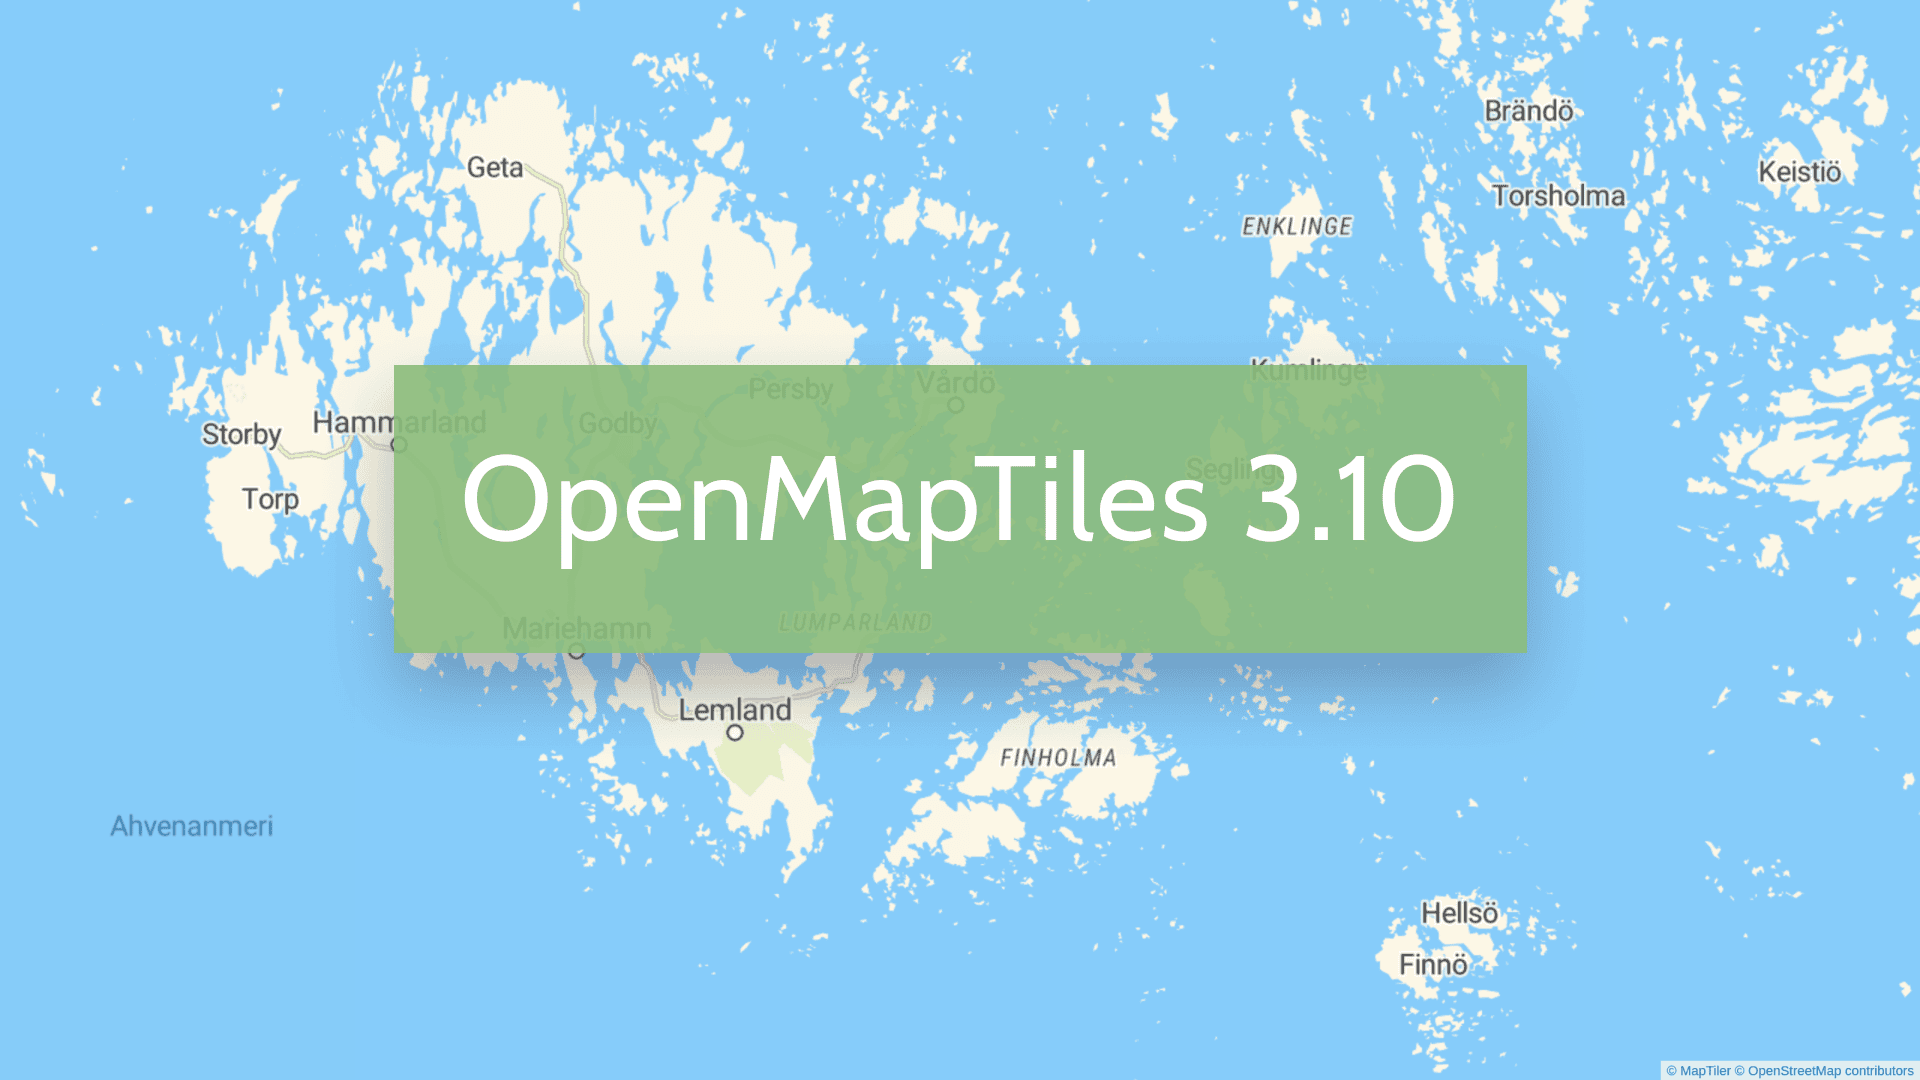 OpenMapTiles 3.10 with islands